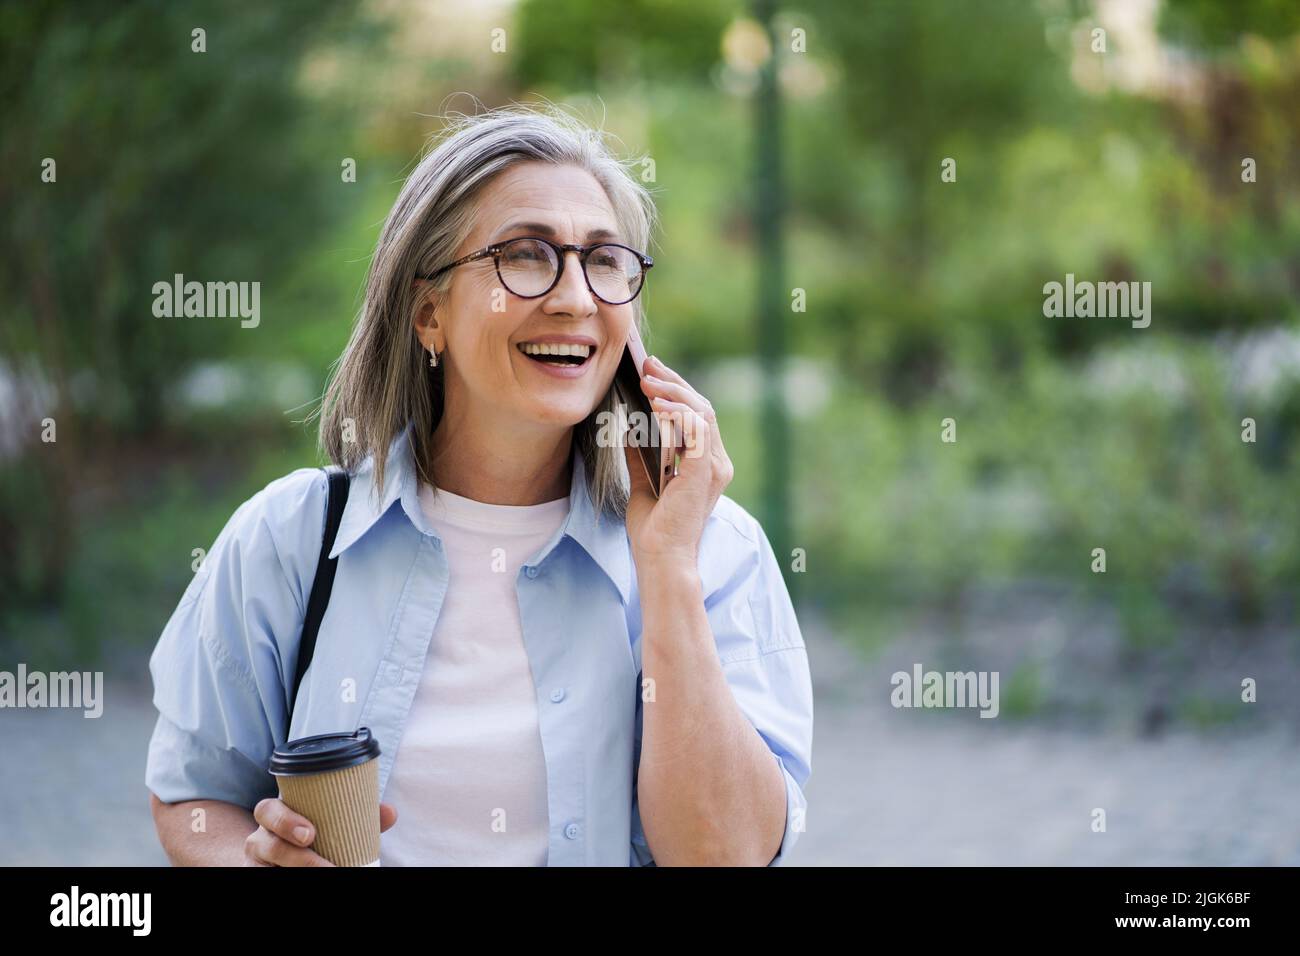 Eine europäisch-grauhaarige Geschäftsfrau spricht am Telefon, während sie unterwegs mit einer Papiertasse im Stadtgarten oder Park Kaffee trinkt. Reife Frau in der Kaffeepause, trägt blaues Hemd und weißes T-Shirt. Stockfoto